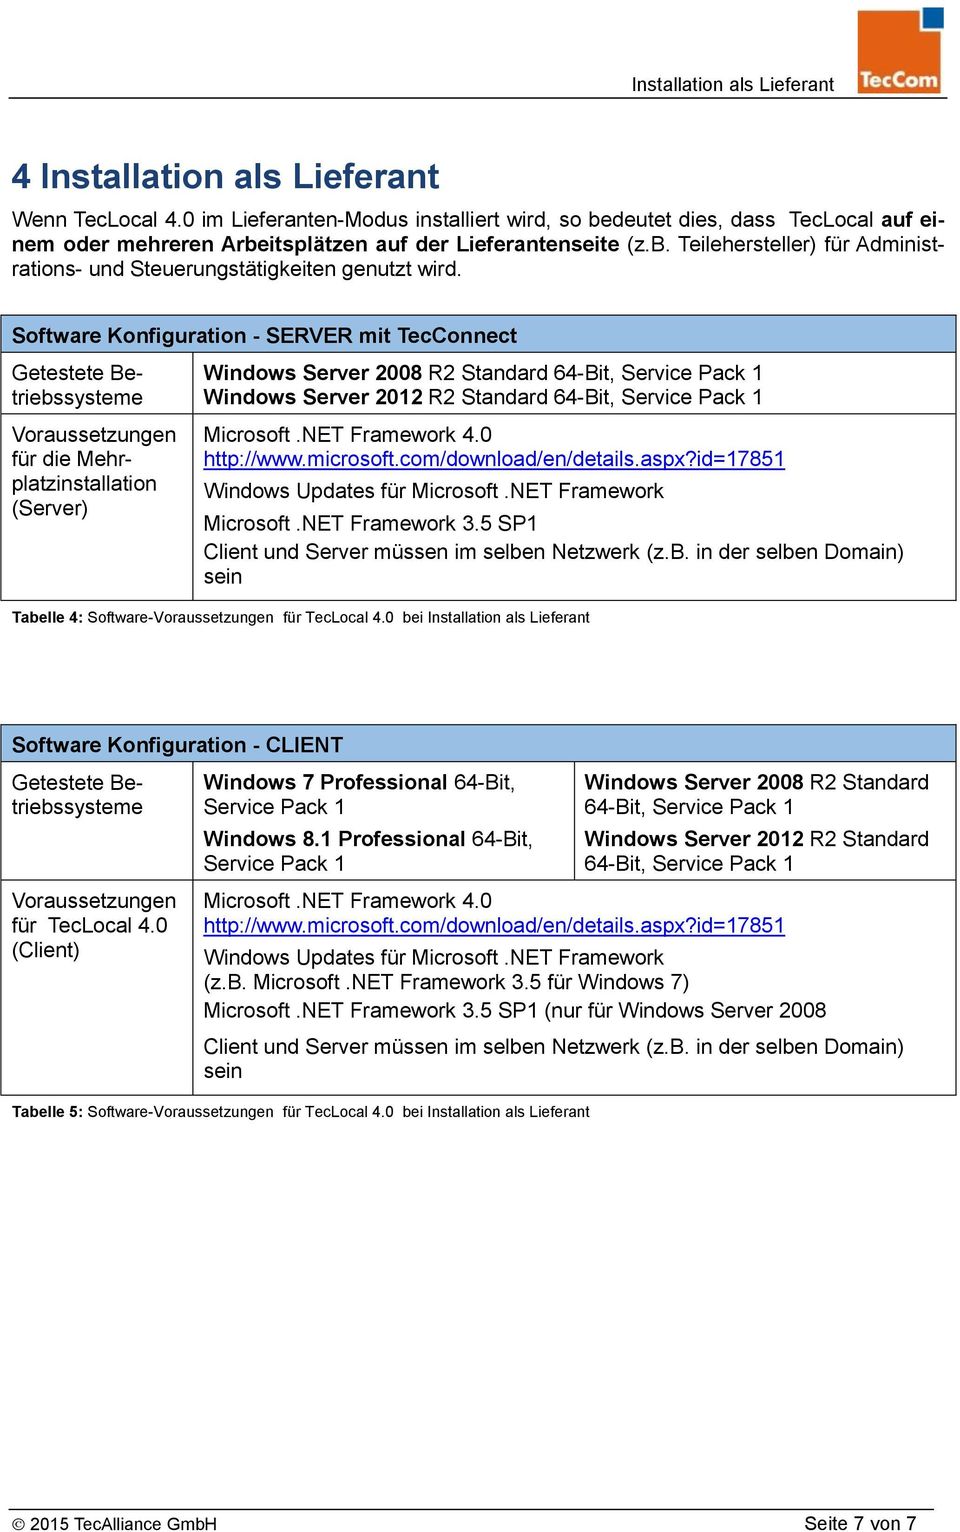 Software Konfiguration - SERVER mit TecConnect für die Mehrplatzinstallation (Server) Windows Server 2008 R2 Standard 64-Bit, Windows Server 2012 R2 Standard 64-Bit, Microsoft.NET Framework 3.